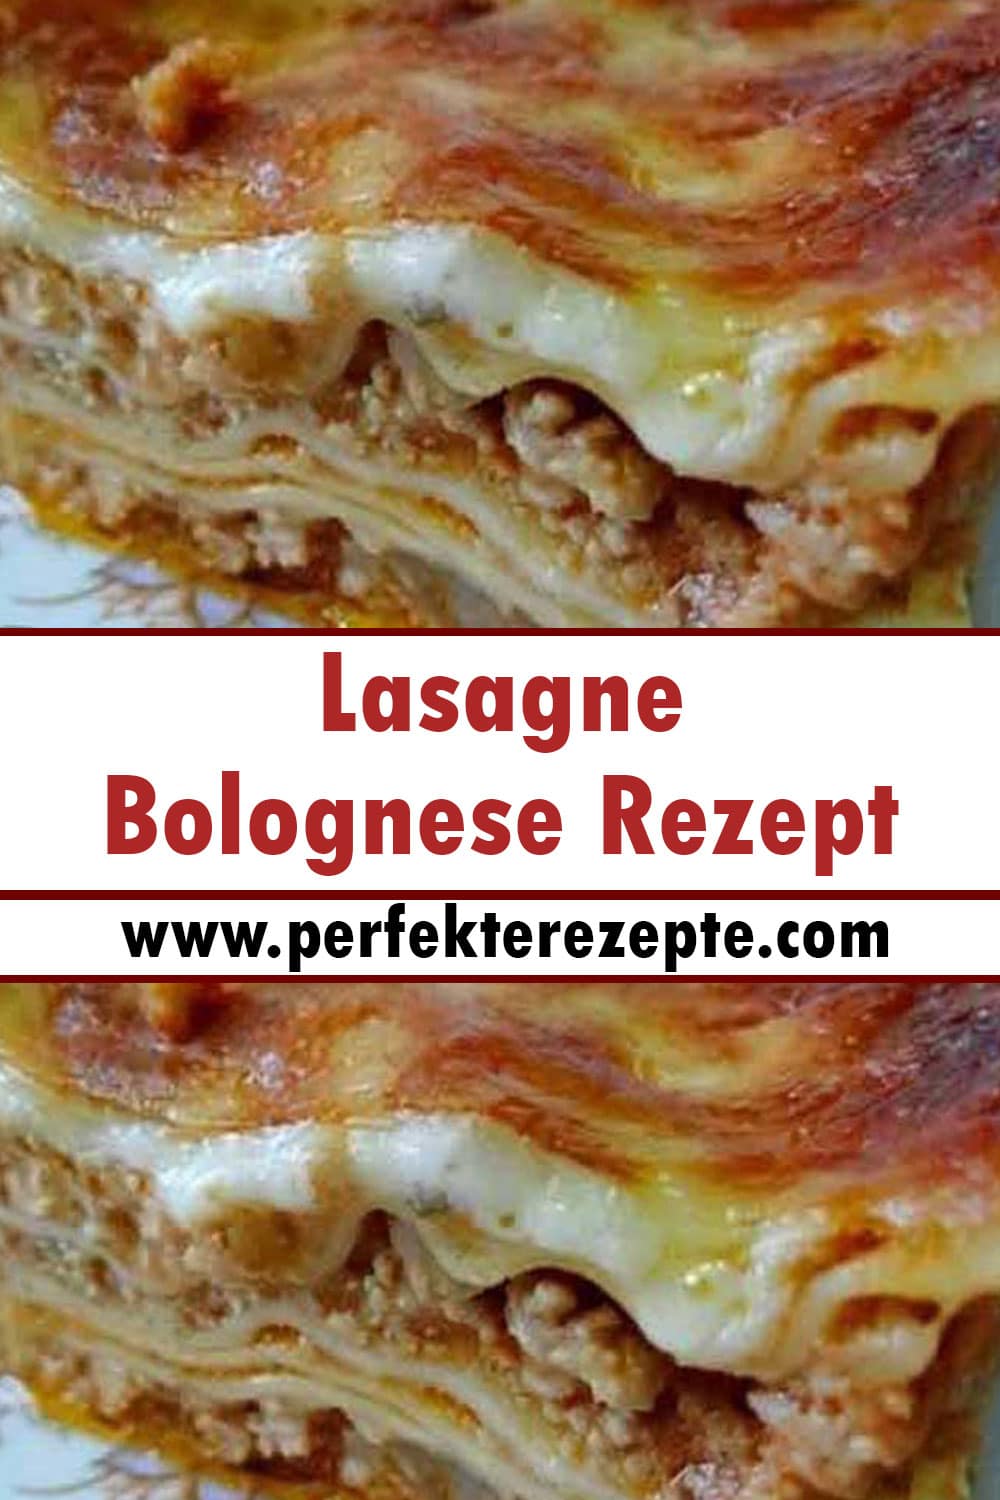 Lasagne Bolognese Rezept